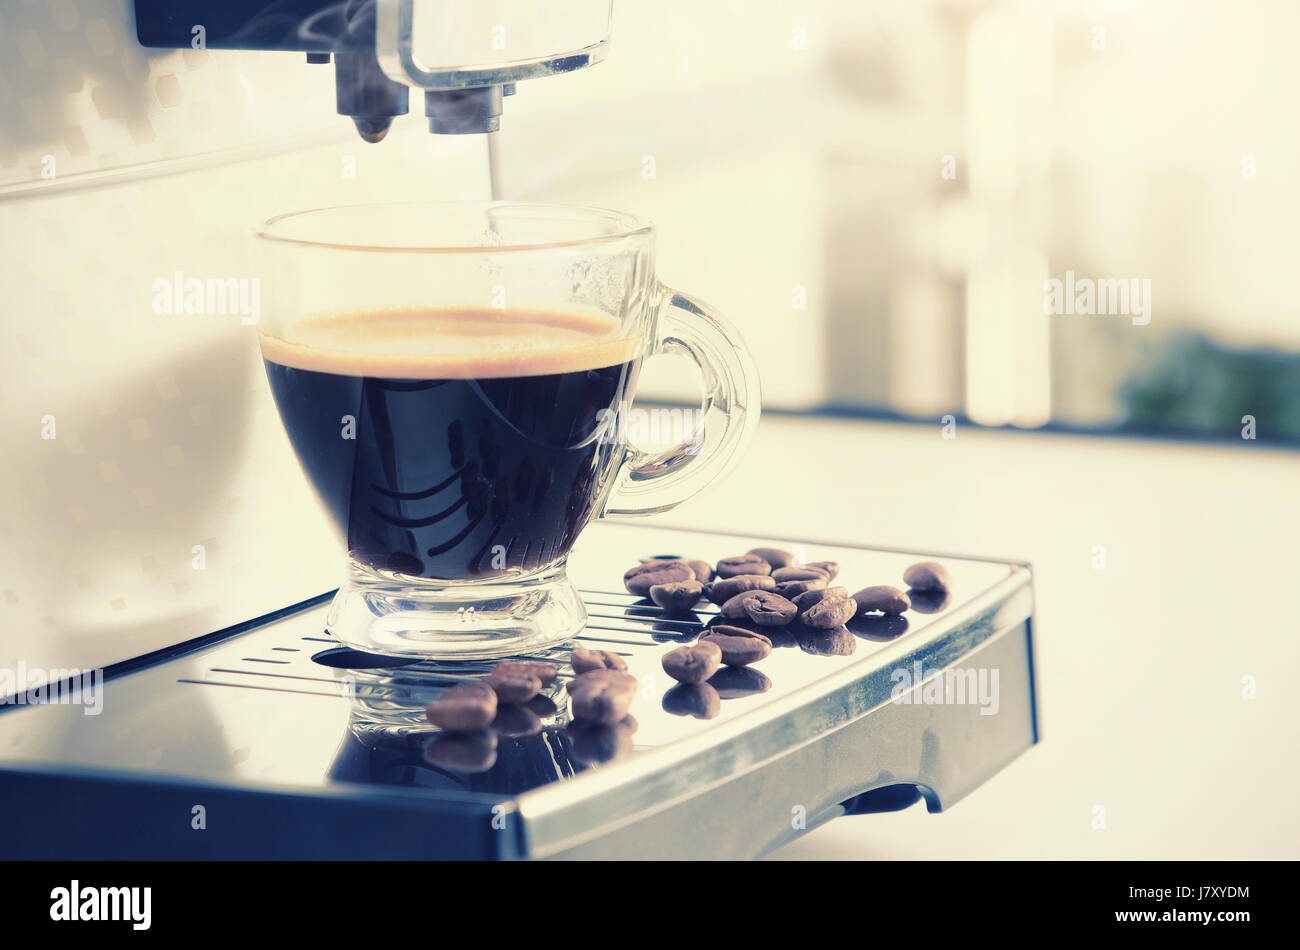 Zu Hause professionelle Kaffeemaschine mit Espresso-Tasse. Kaffee Maschine Espresso Tasse heiße italienische weiße Küchenkonzept Stockfoto